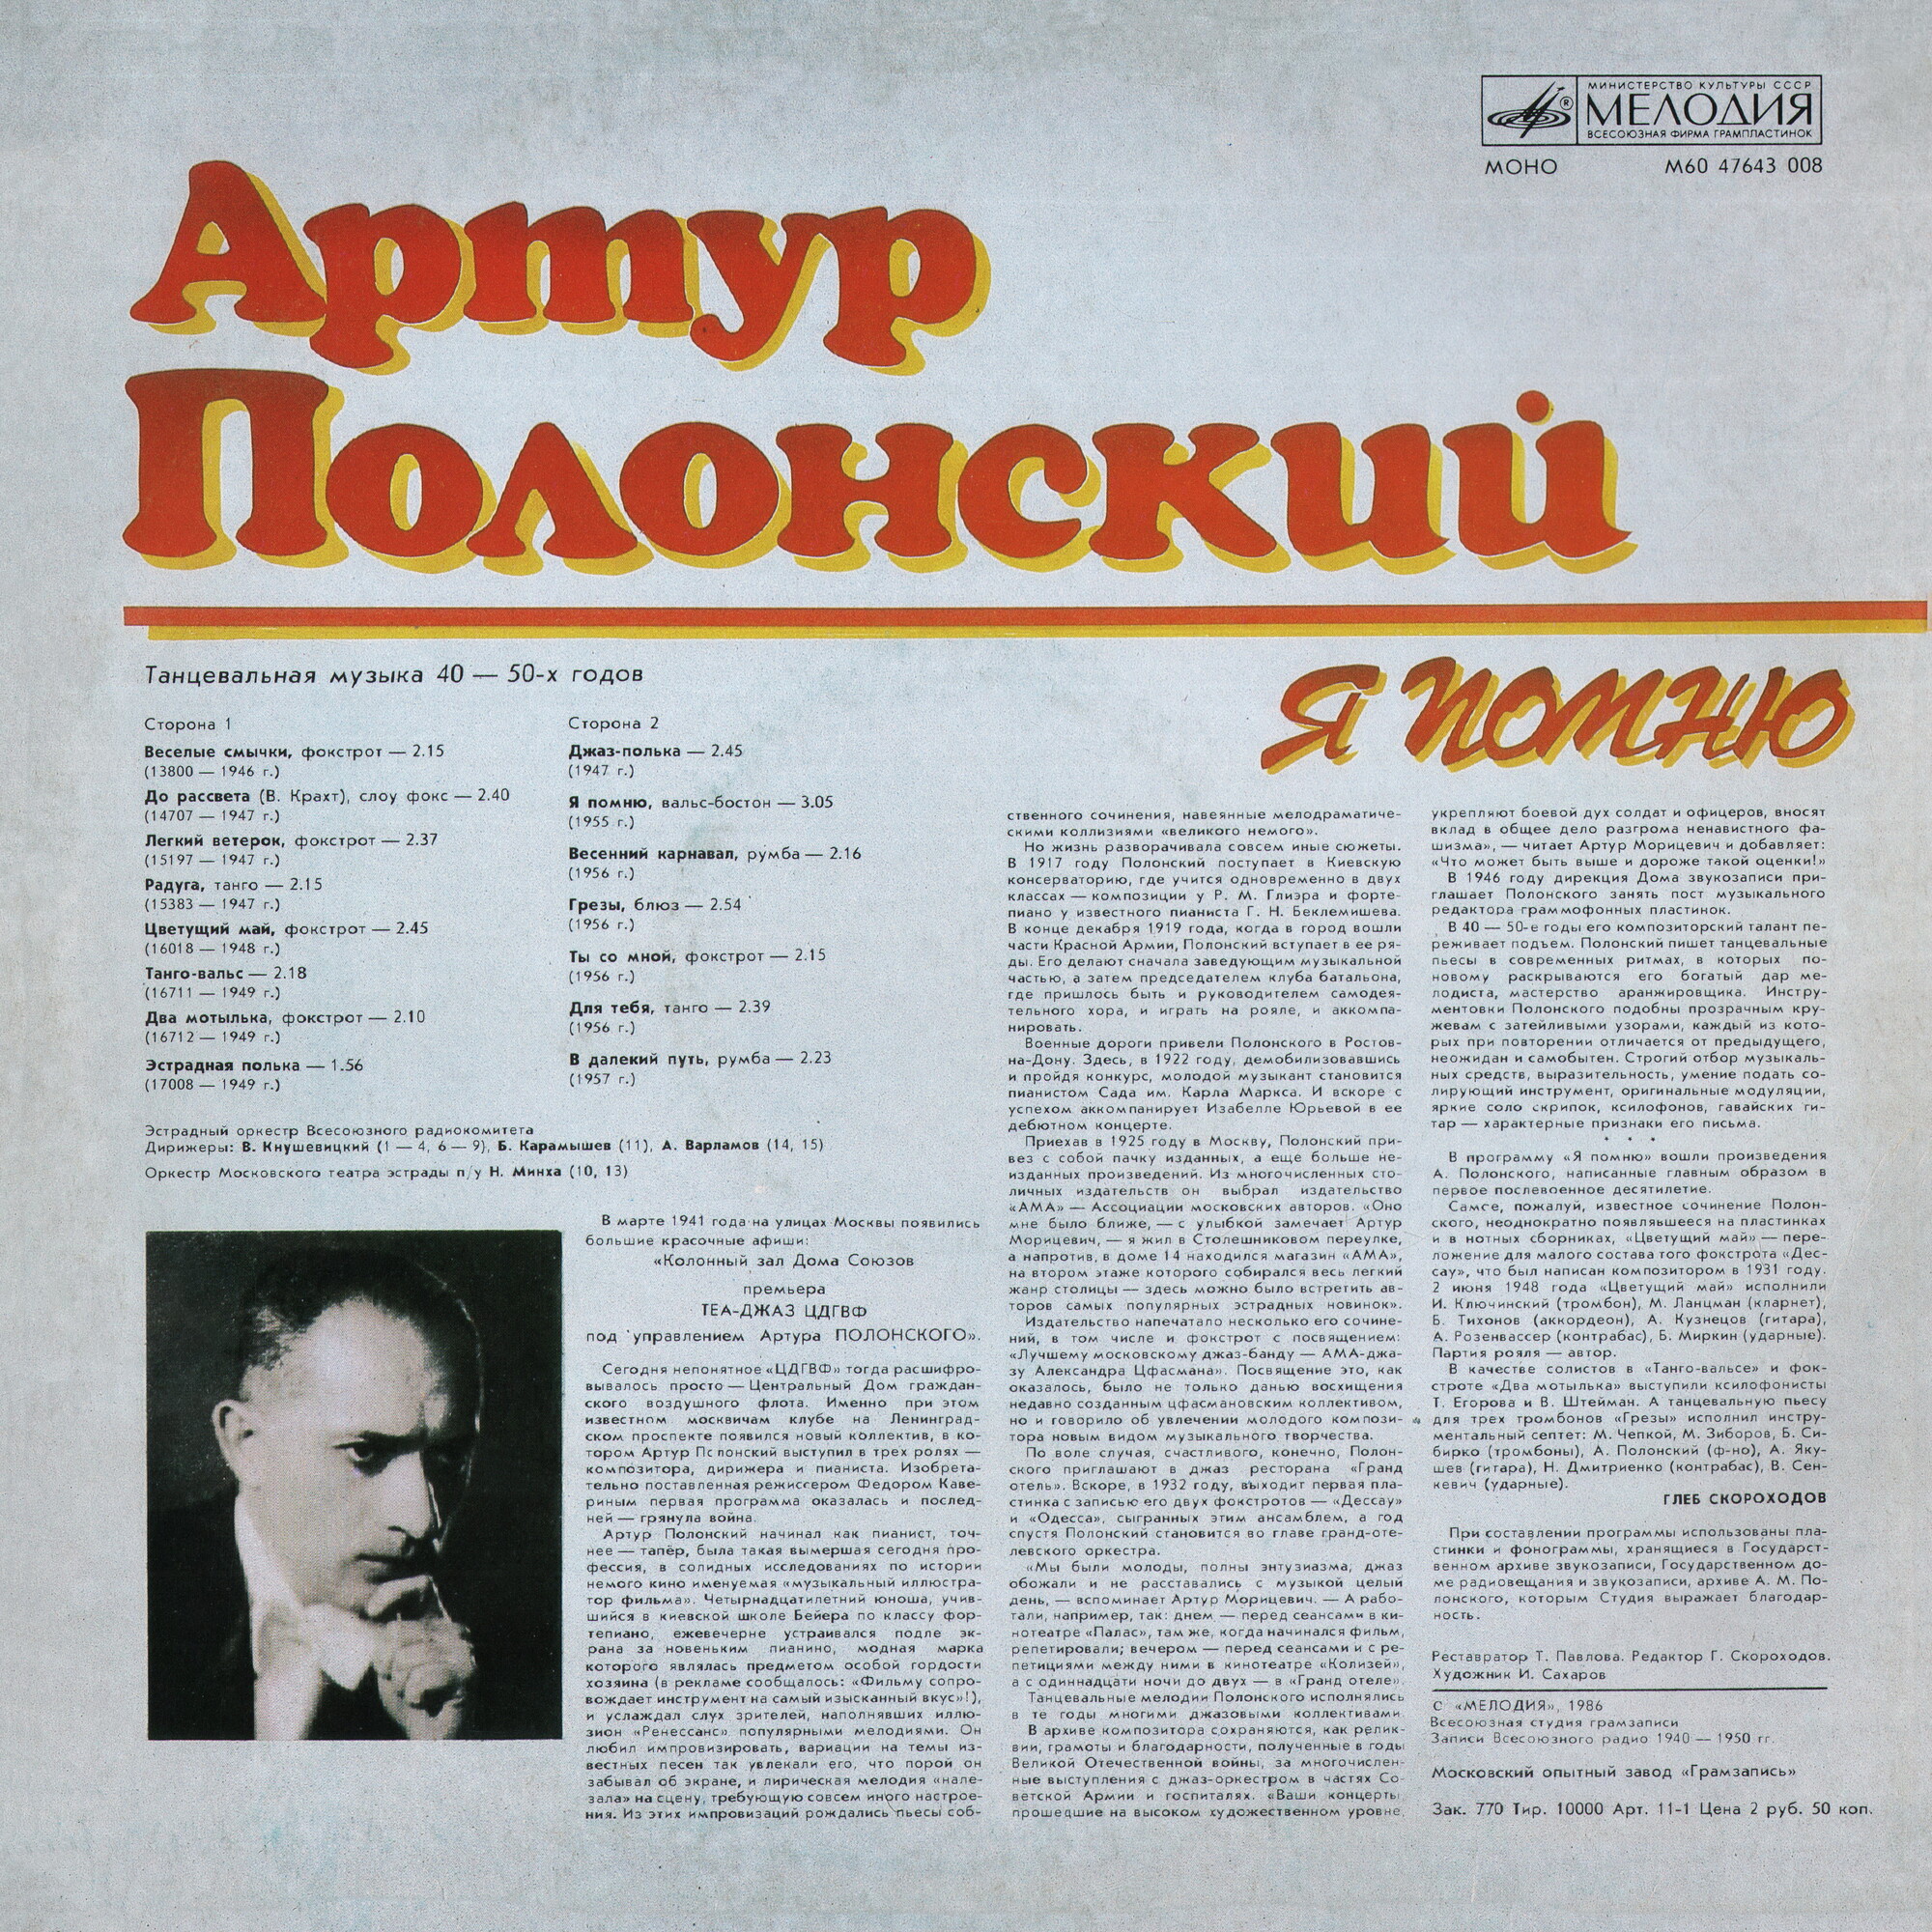 Артур ПОЛОНСКИЙ. «Я помню», танцевальная музыка 40—50-х гг.